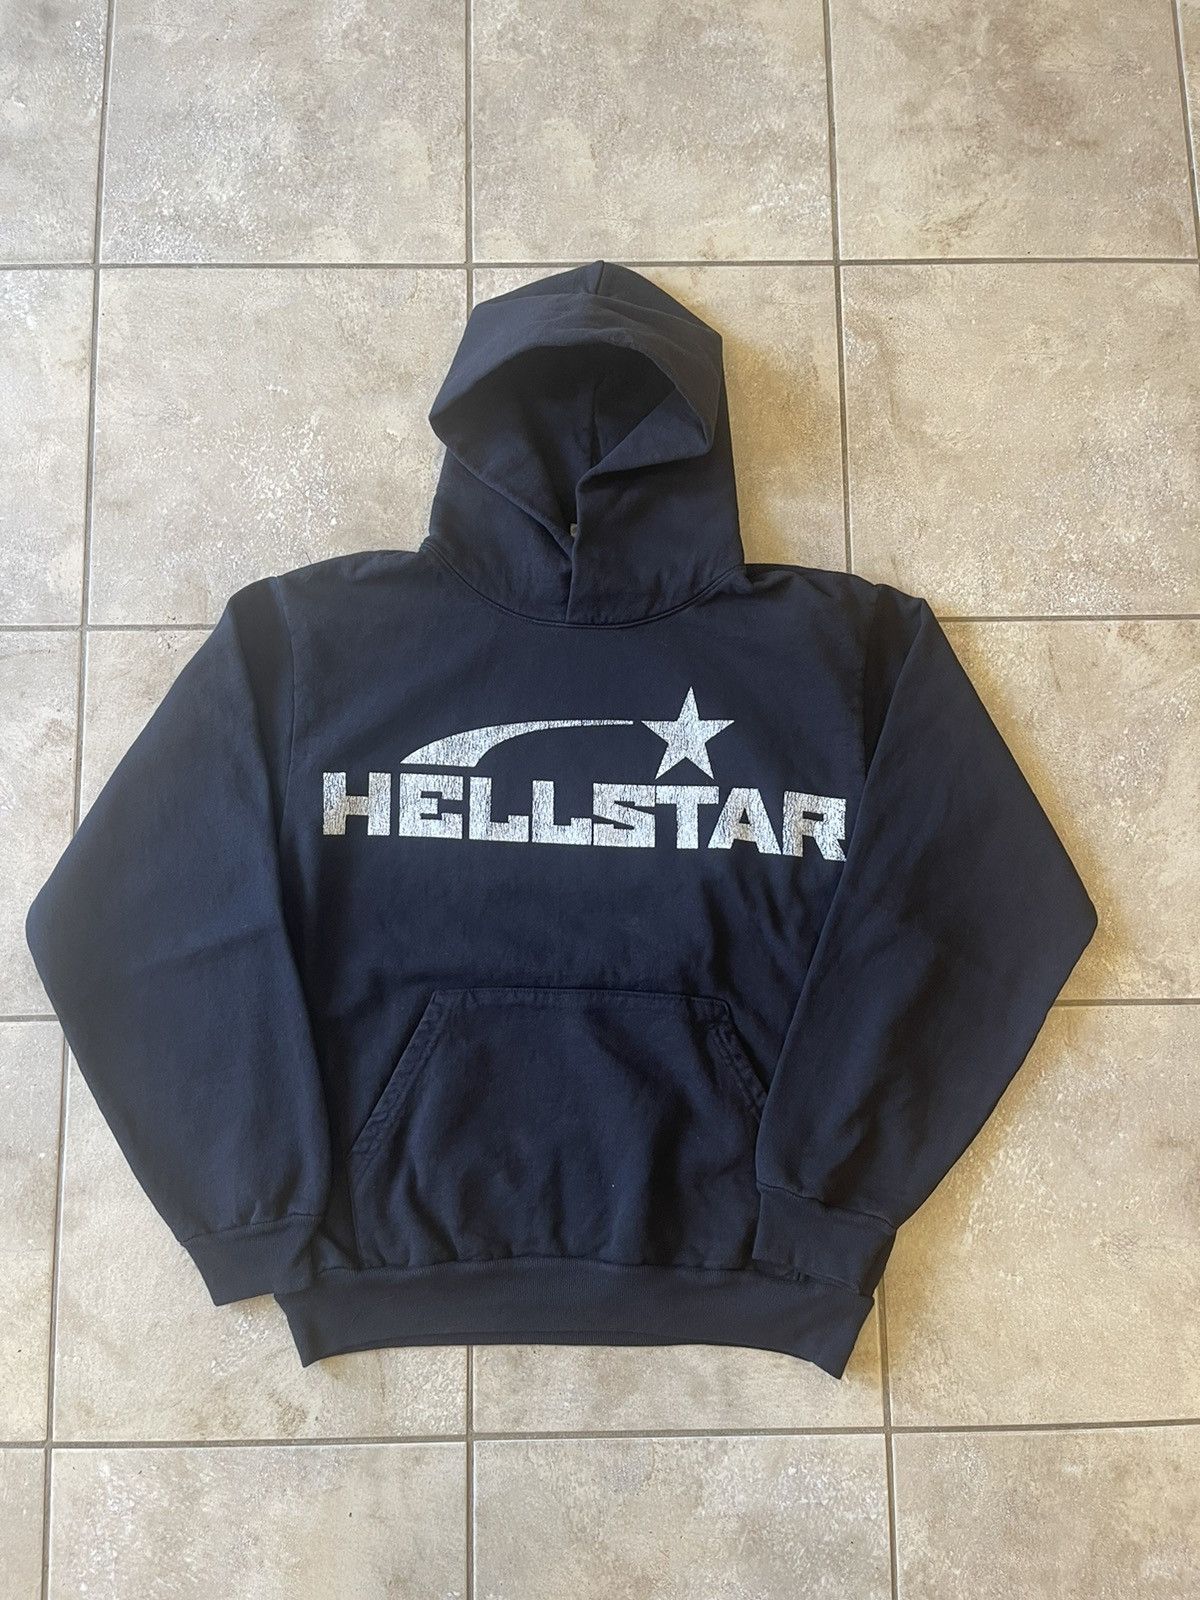 Hellstar Hellstar Basic Vintage Logo Hoodie Grailed